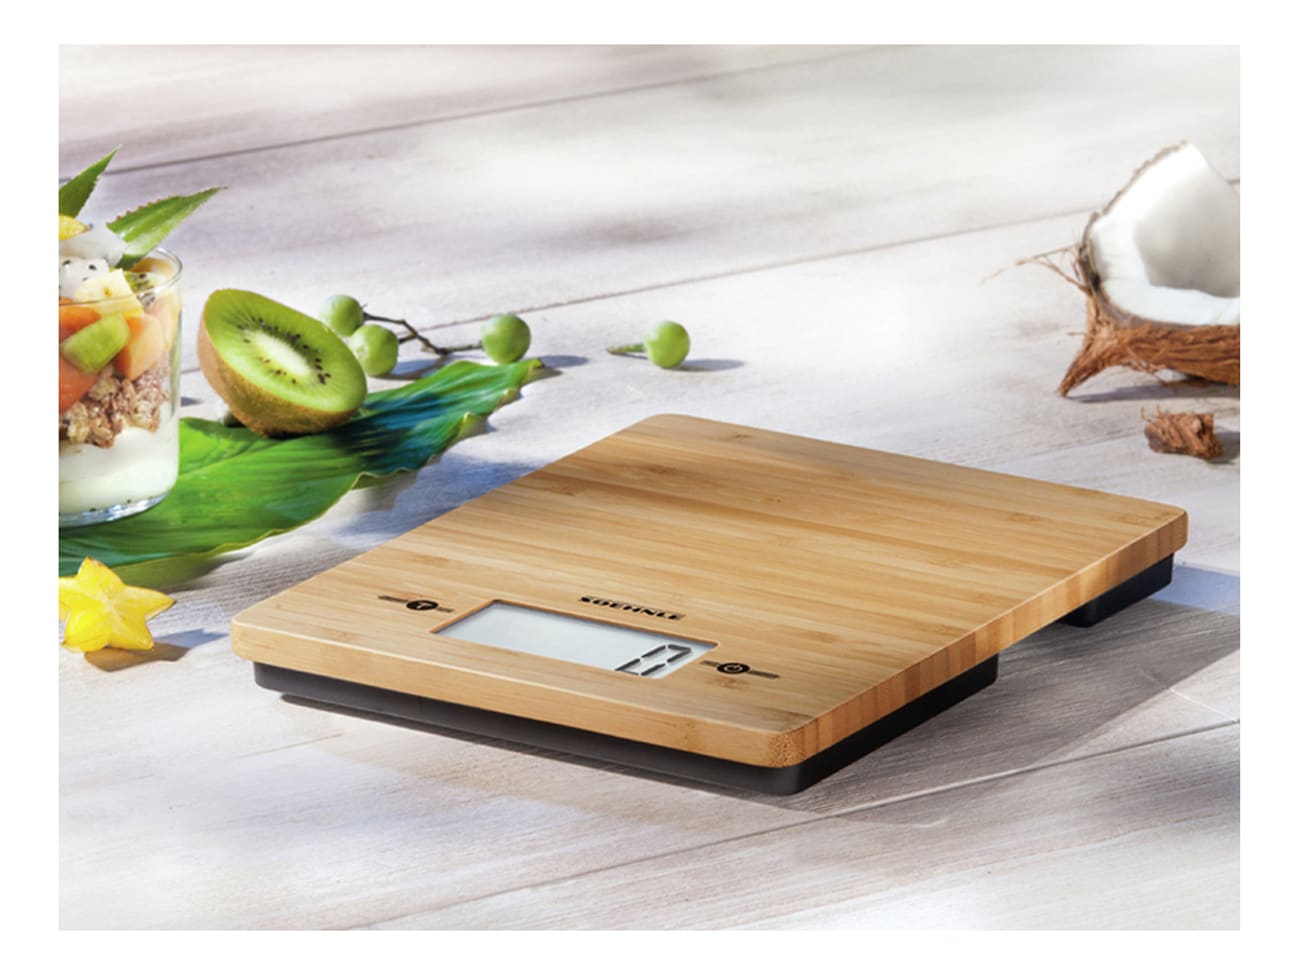 Relaxdays Balance cuisine bambou numérique, écran LCD, fonction